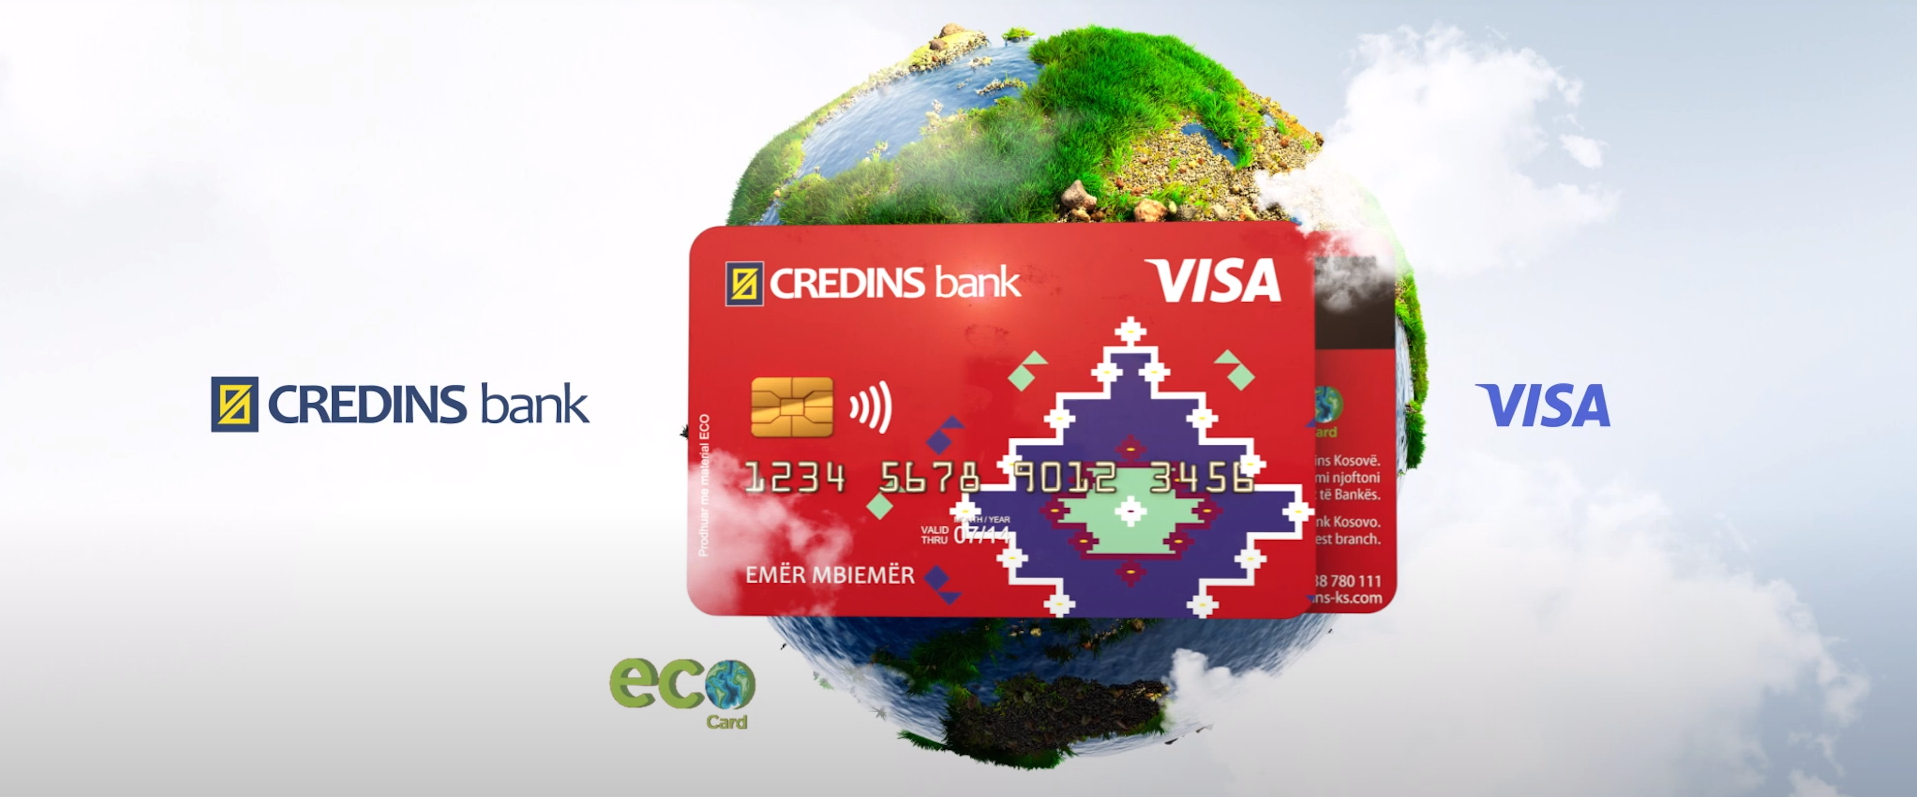 Kartat bankare Credins do jenë të përbëra me material 99% të tretshëm në mjedis